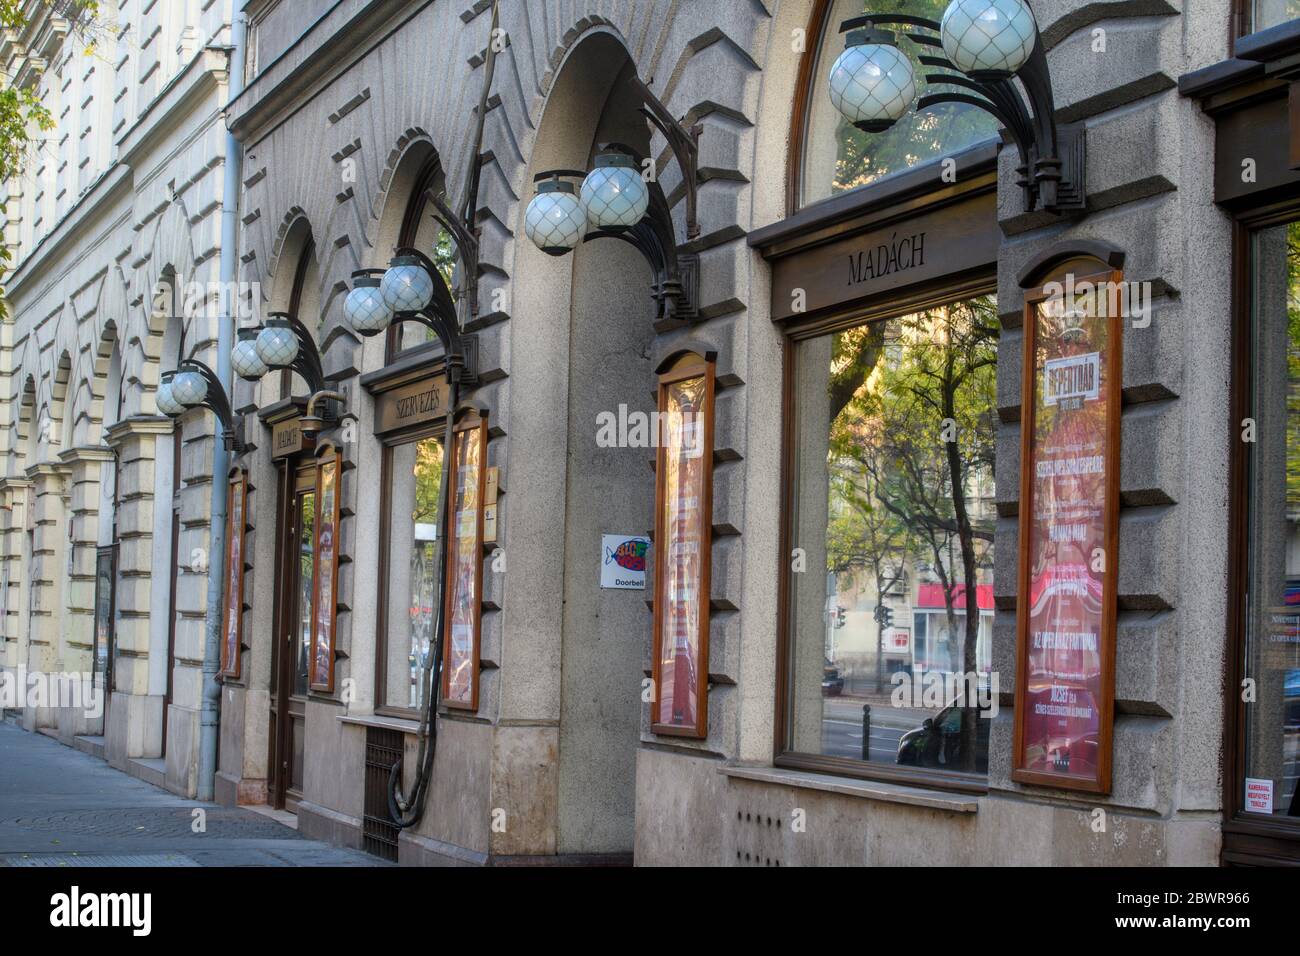 Centro de Budapest (Pest) - ventanas y luces al aire libre en un edificio del centro de la ciudad, Budapest, Hungría Central. Foto de stock